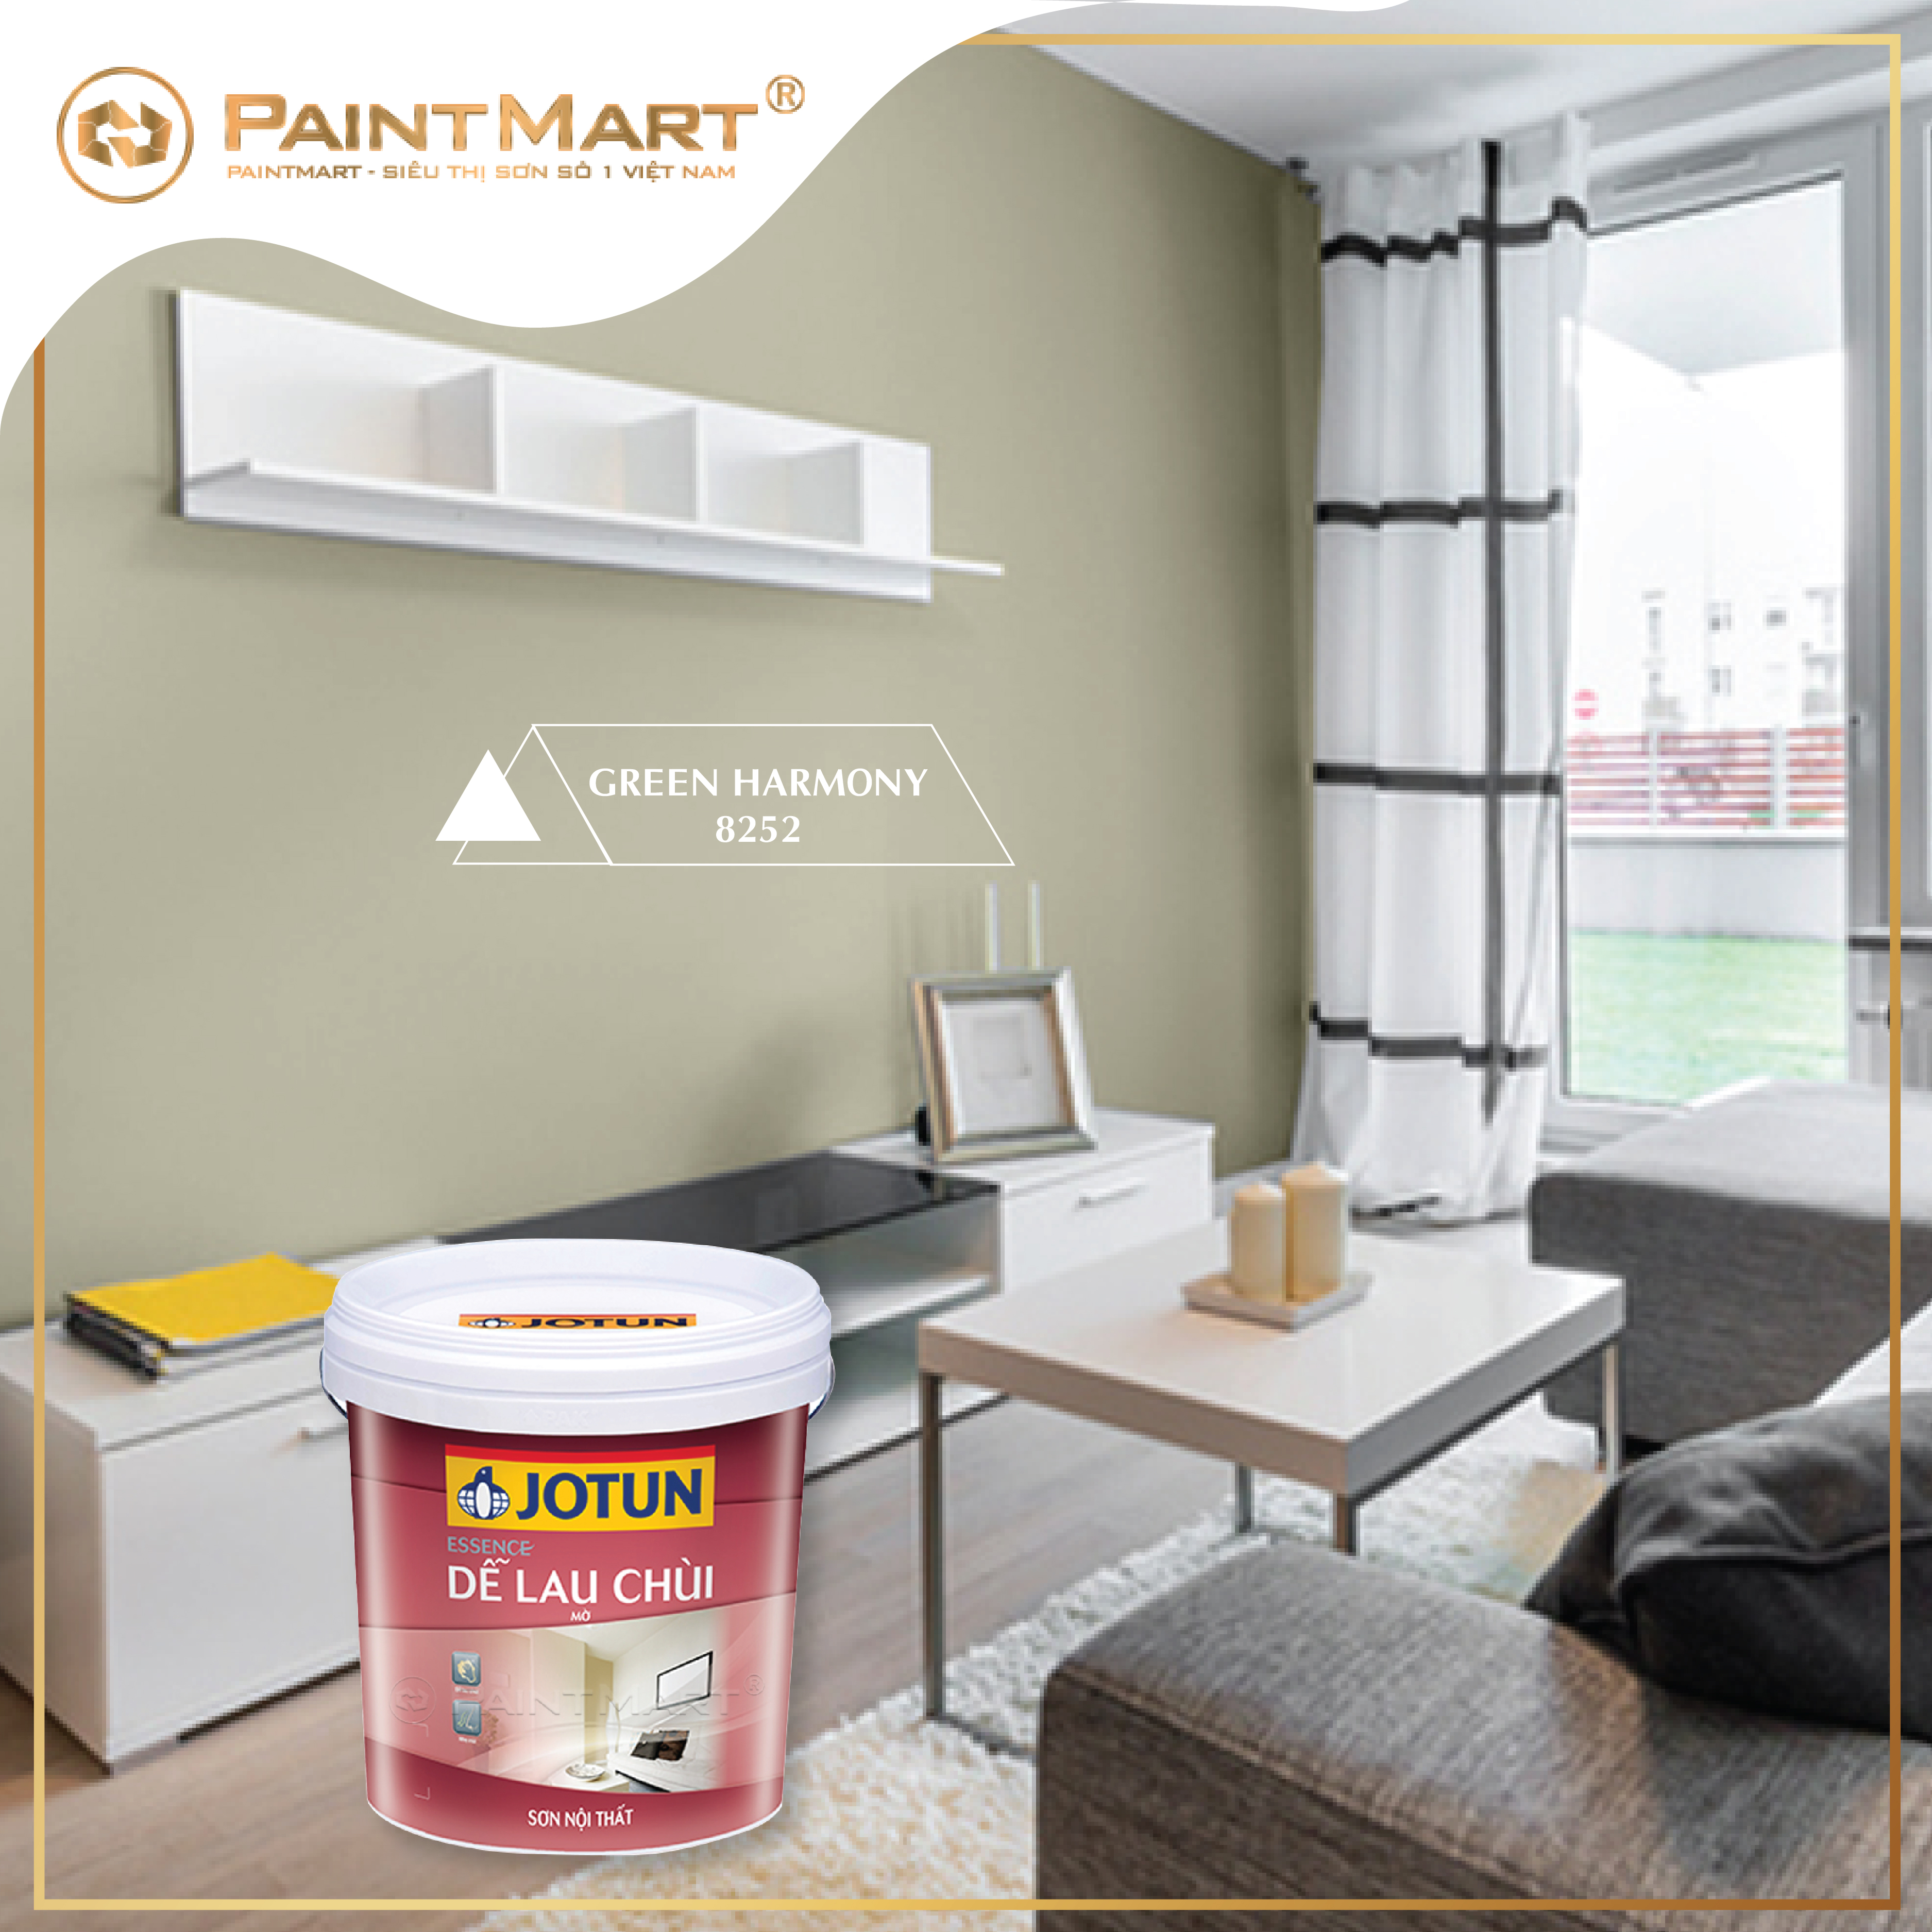 Bật mí 4 màu sơn cho phòng khách - sơn Jotun:Jotun đưa ra 4 màu sơn phòng khách đẹp nhất và phù hợp với phong cách của bạn. Khám phá các màu sắc Tía tô, Mận, Bạch mã, Vàng nhạt để tạo nên không gian sống sang trọng và ấm cúng.